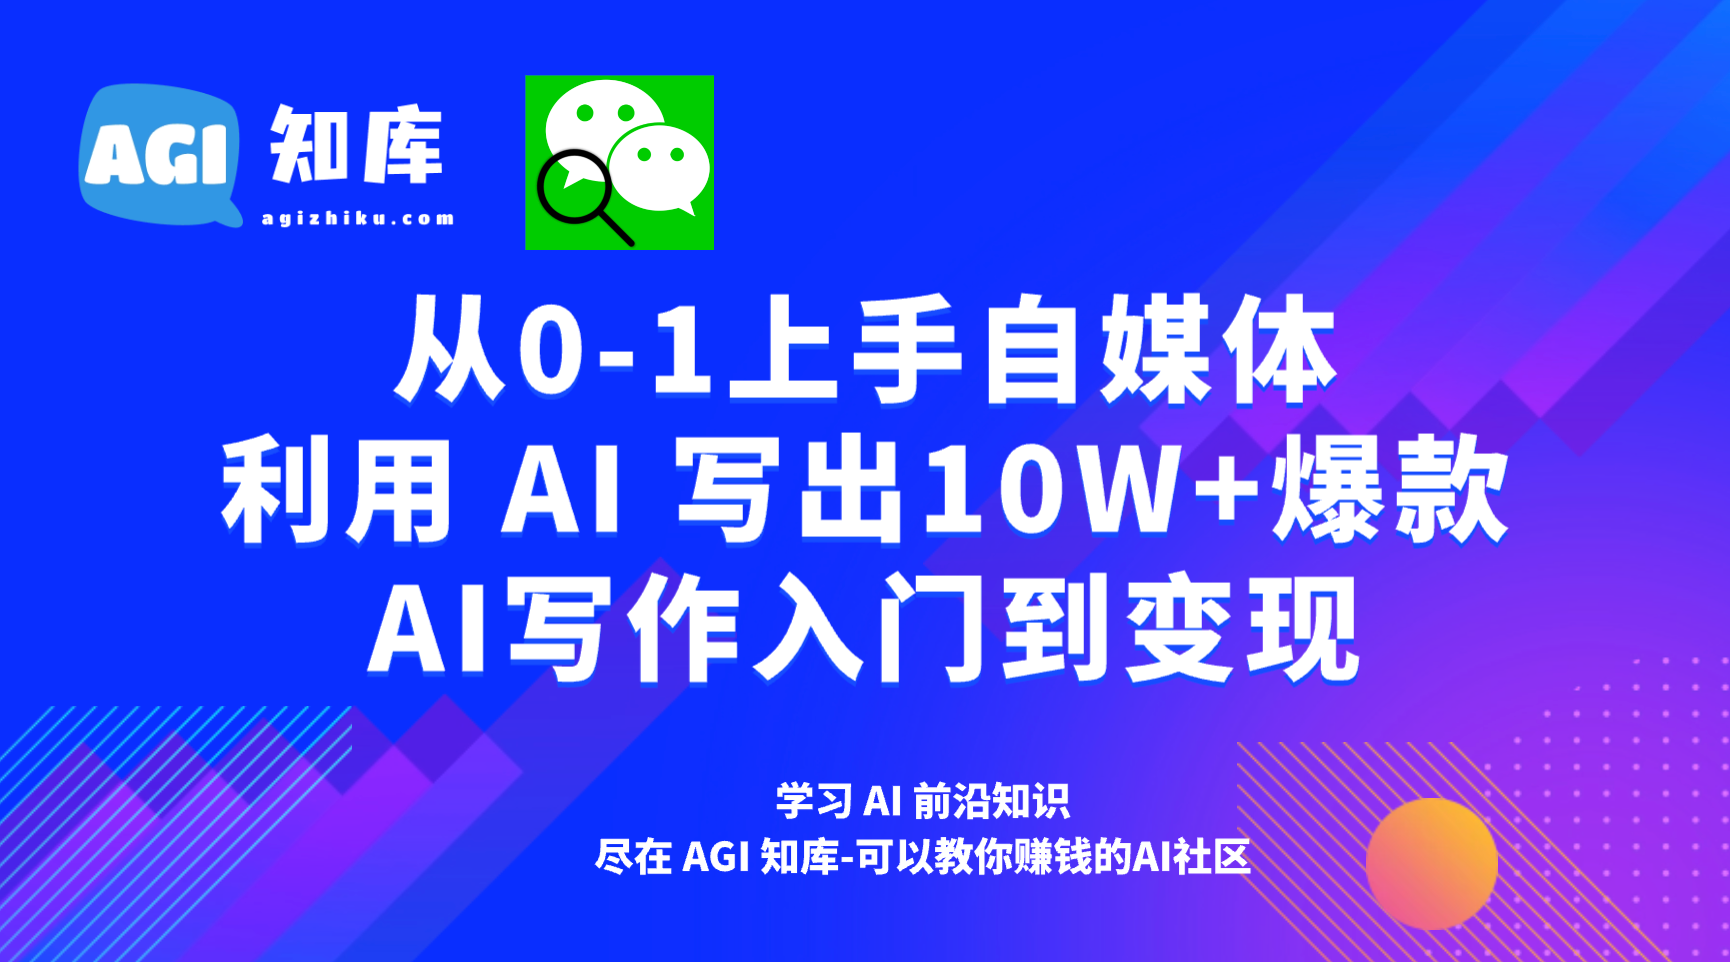 AI公众号写作36：公众号爆文常见问题答疑-AGI智库-全国最大的AI智库社区 | AI导航 | AI学习网站